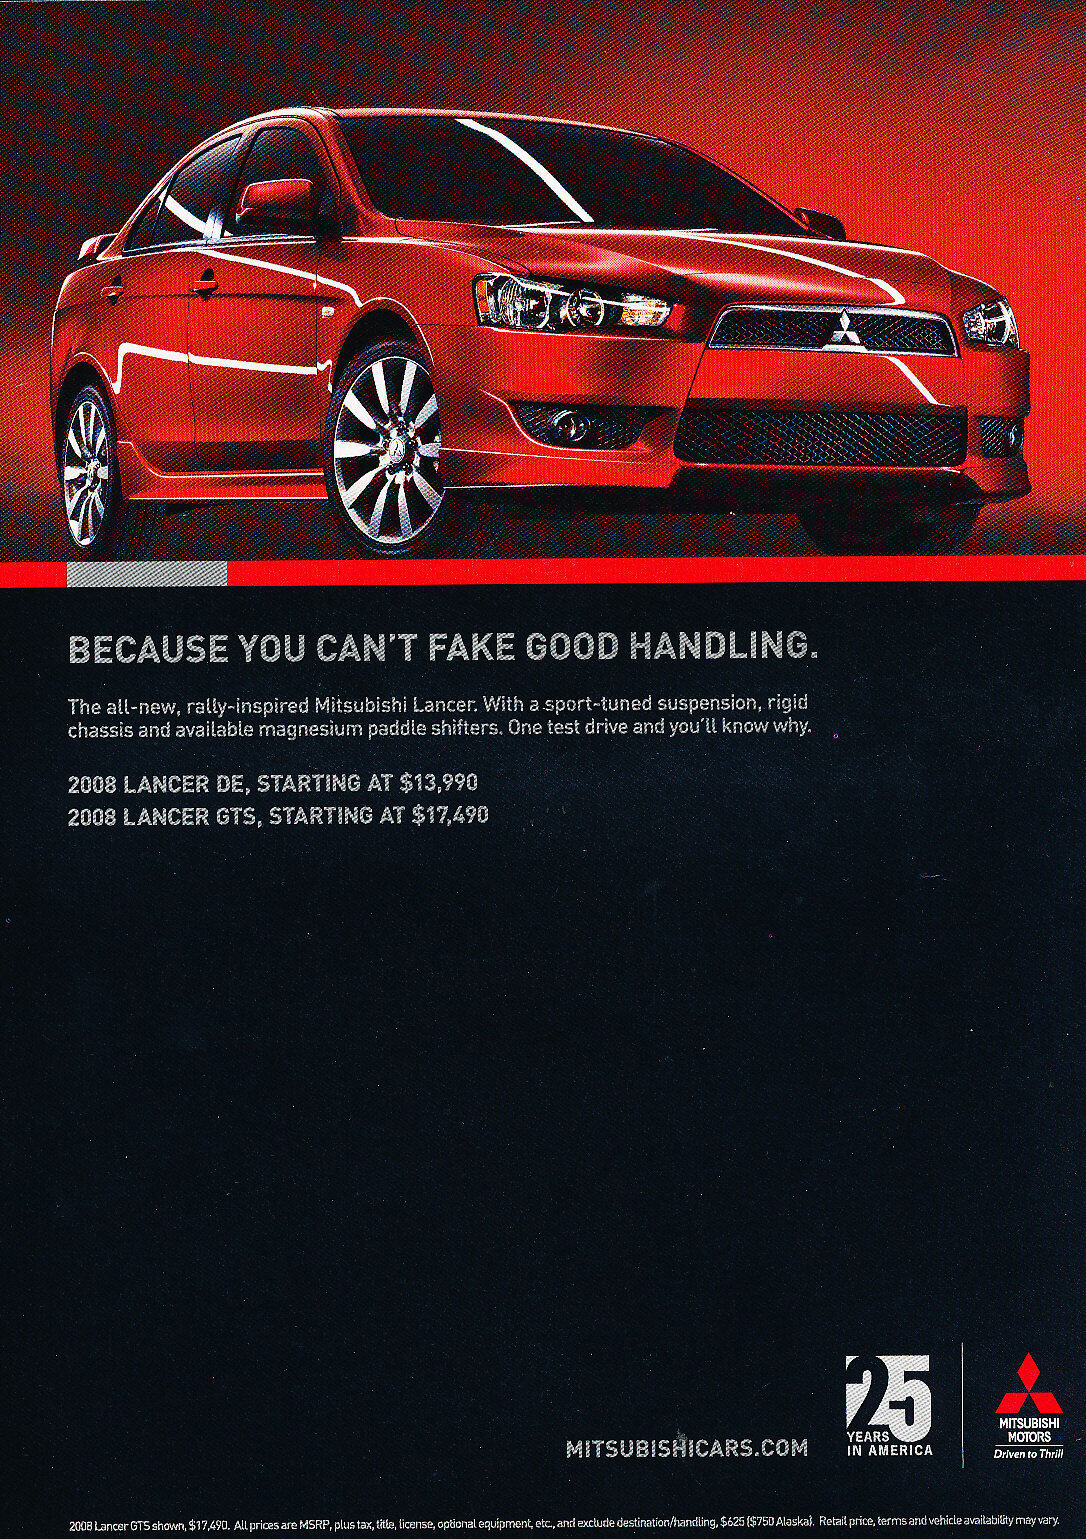 2008 Mitsubishi Lancer - DE and GTS   - Original Advertisement Car Print Ad J329